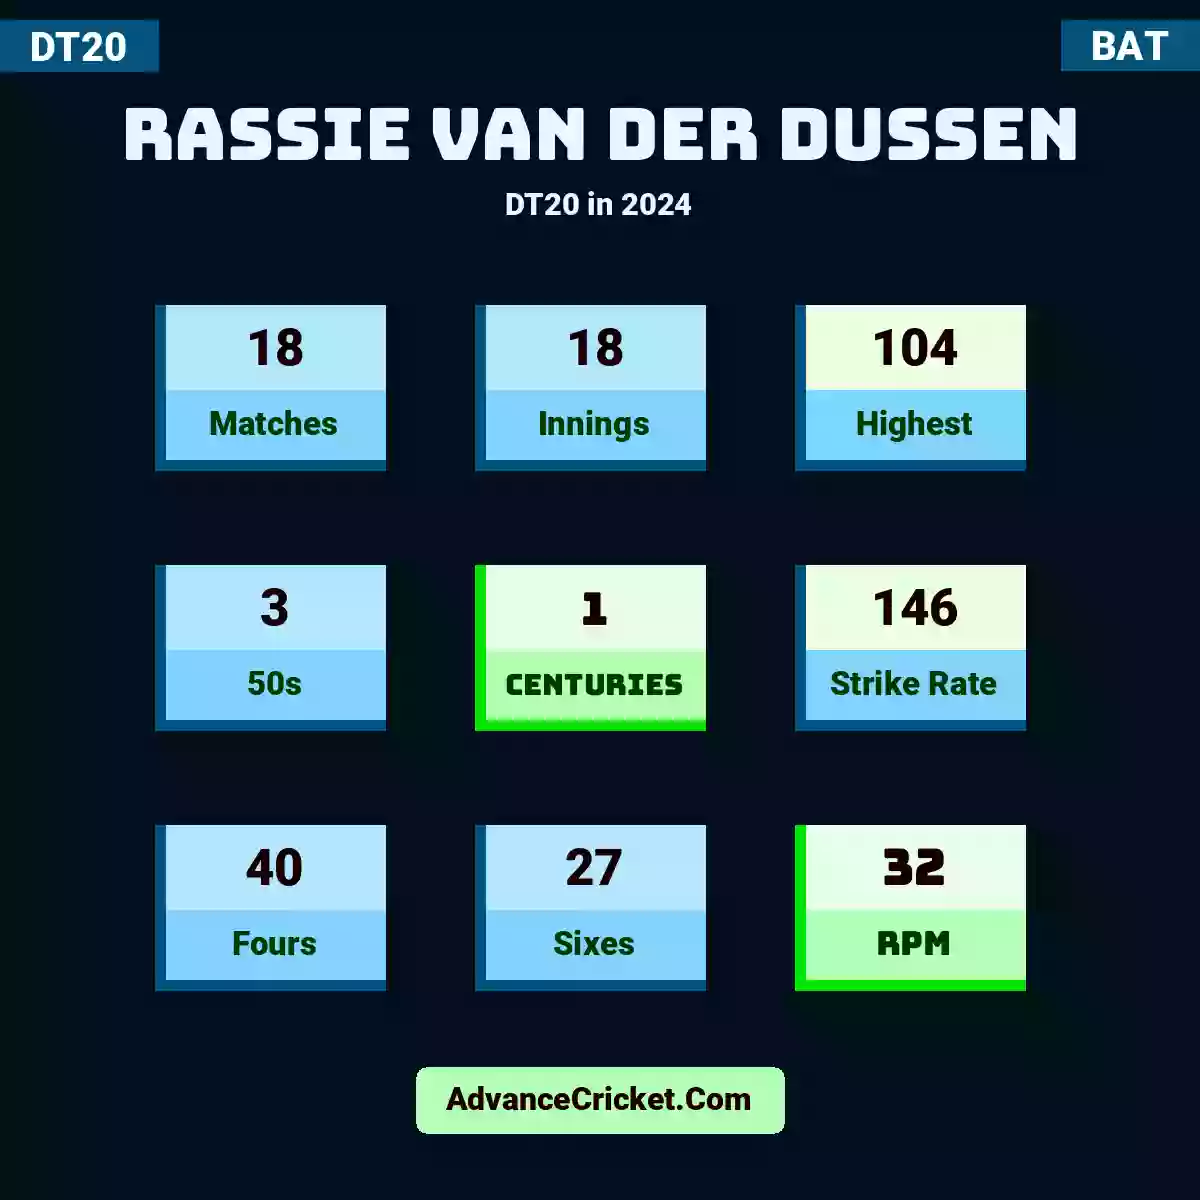 Rassie van der Dussen DT20  in 2024, Rassie van der Dussen played 18 matches, scored 104 runs as highest, 3 half-centuries, and 1 centuries, with a strike rate of 146. R.Dussen hit 40 fours and 27 sixes, with an RPM of 32.